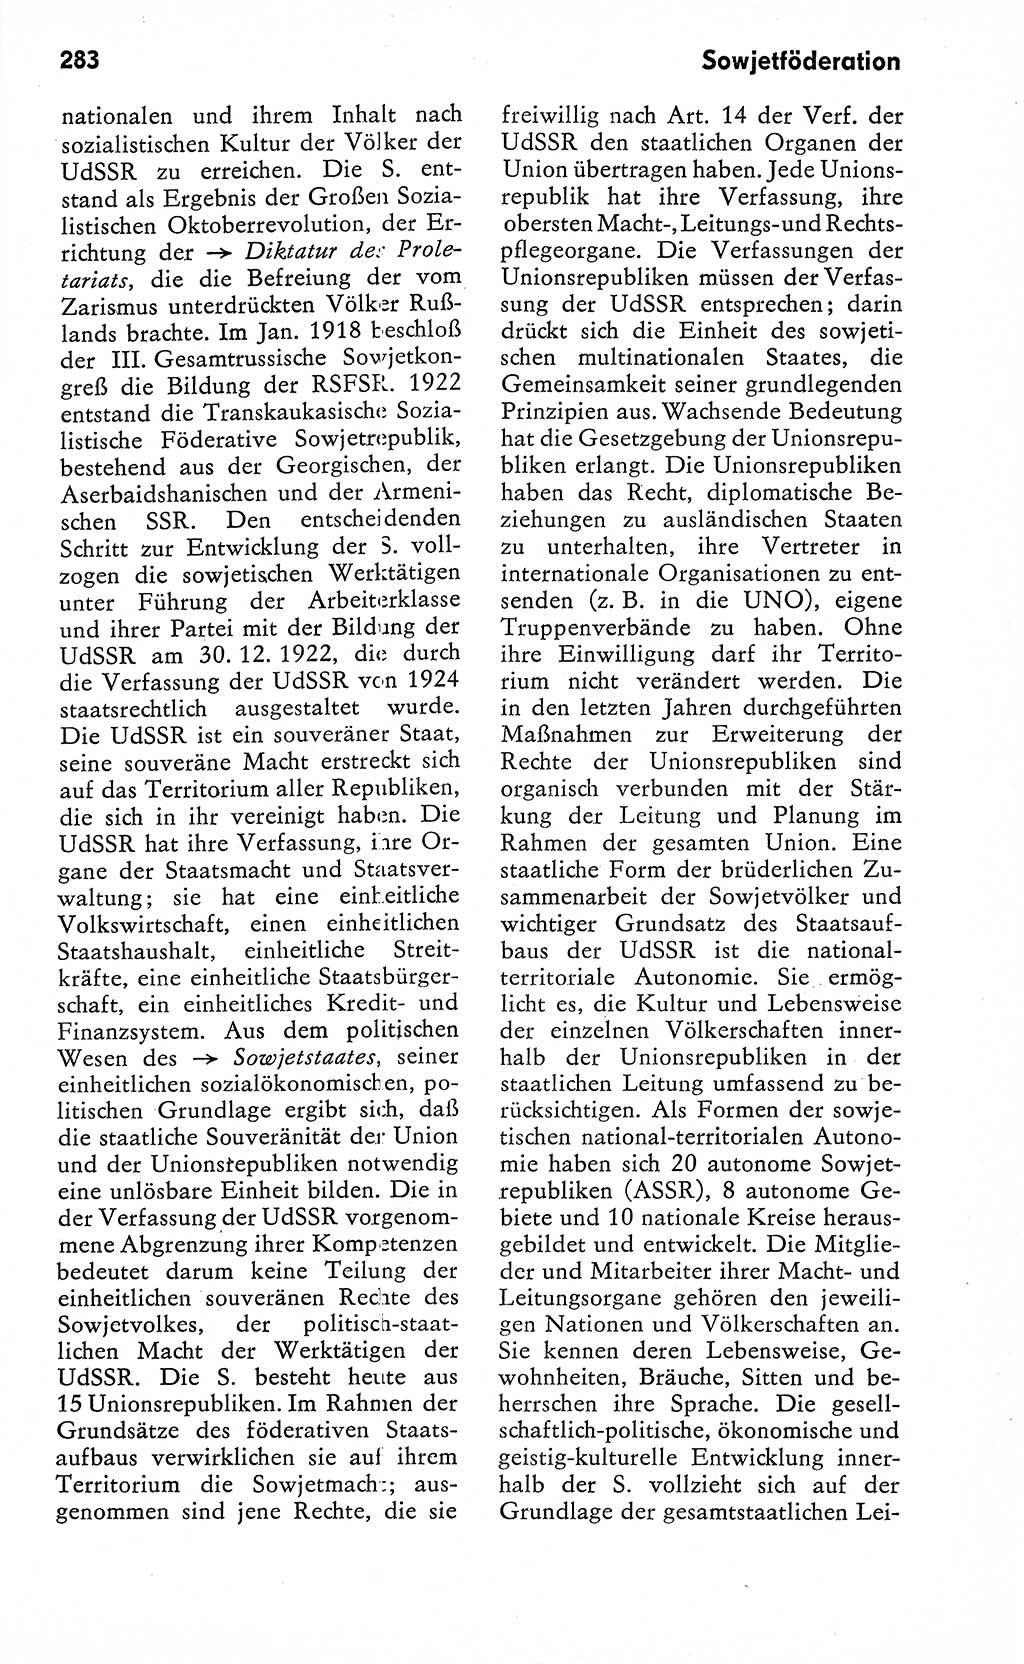 Wörterbuch zum sozialistischen Staat [Deutsche Demokratische Republik (DDR)] 1974, Seite 283 (Wb. soz. St. DDR 1974, S. 283)